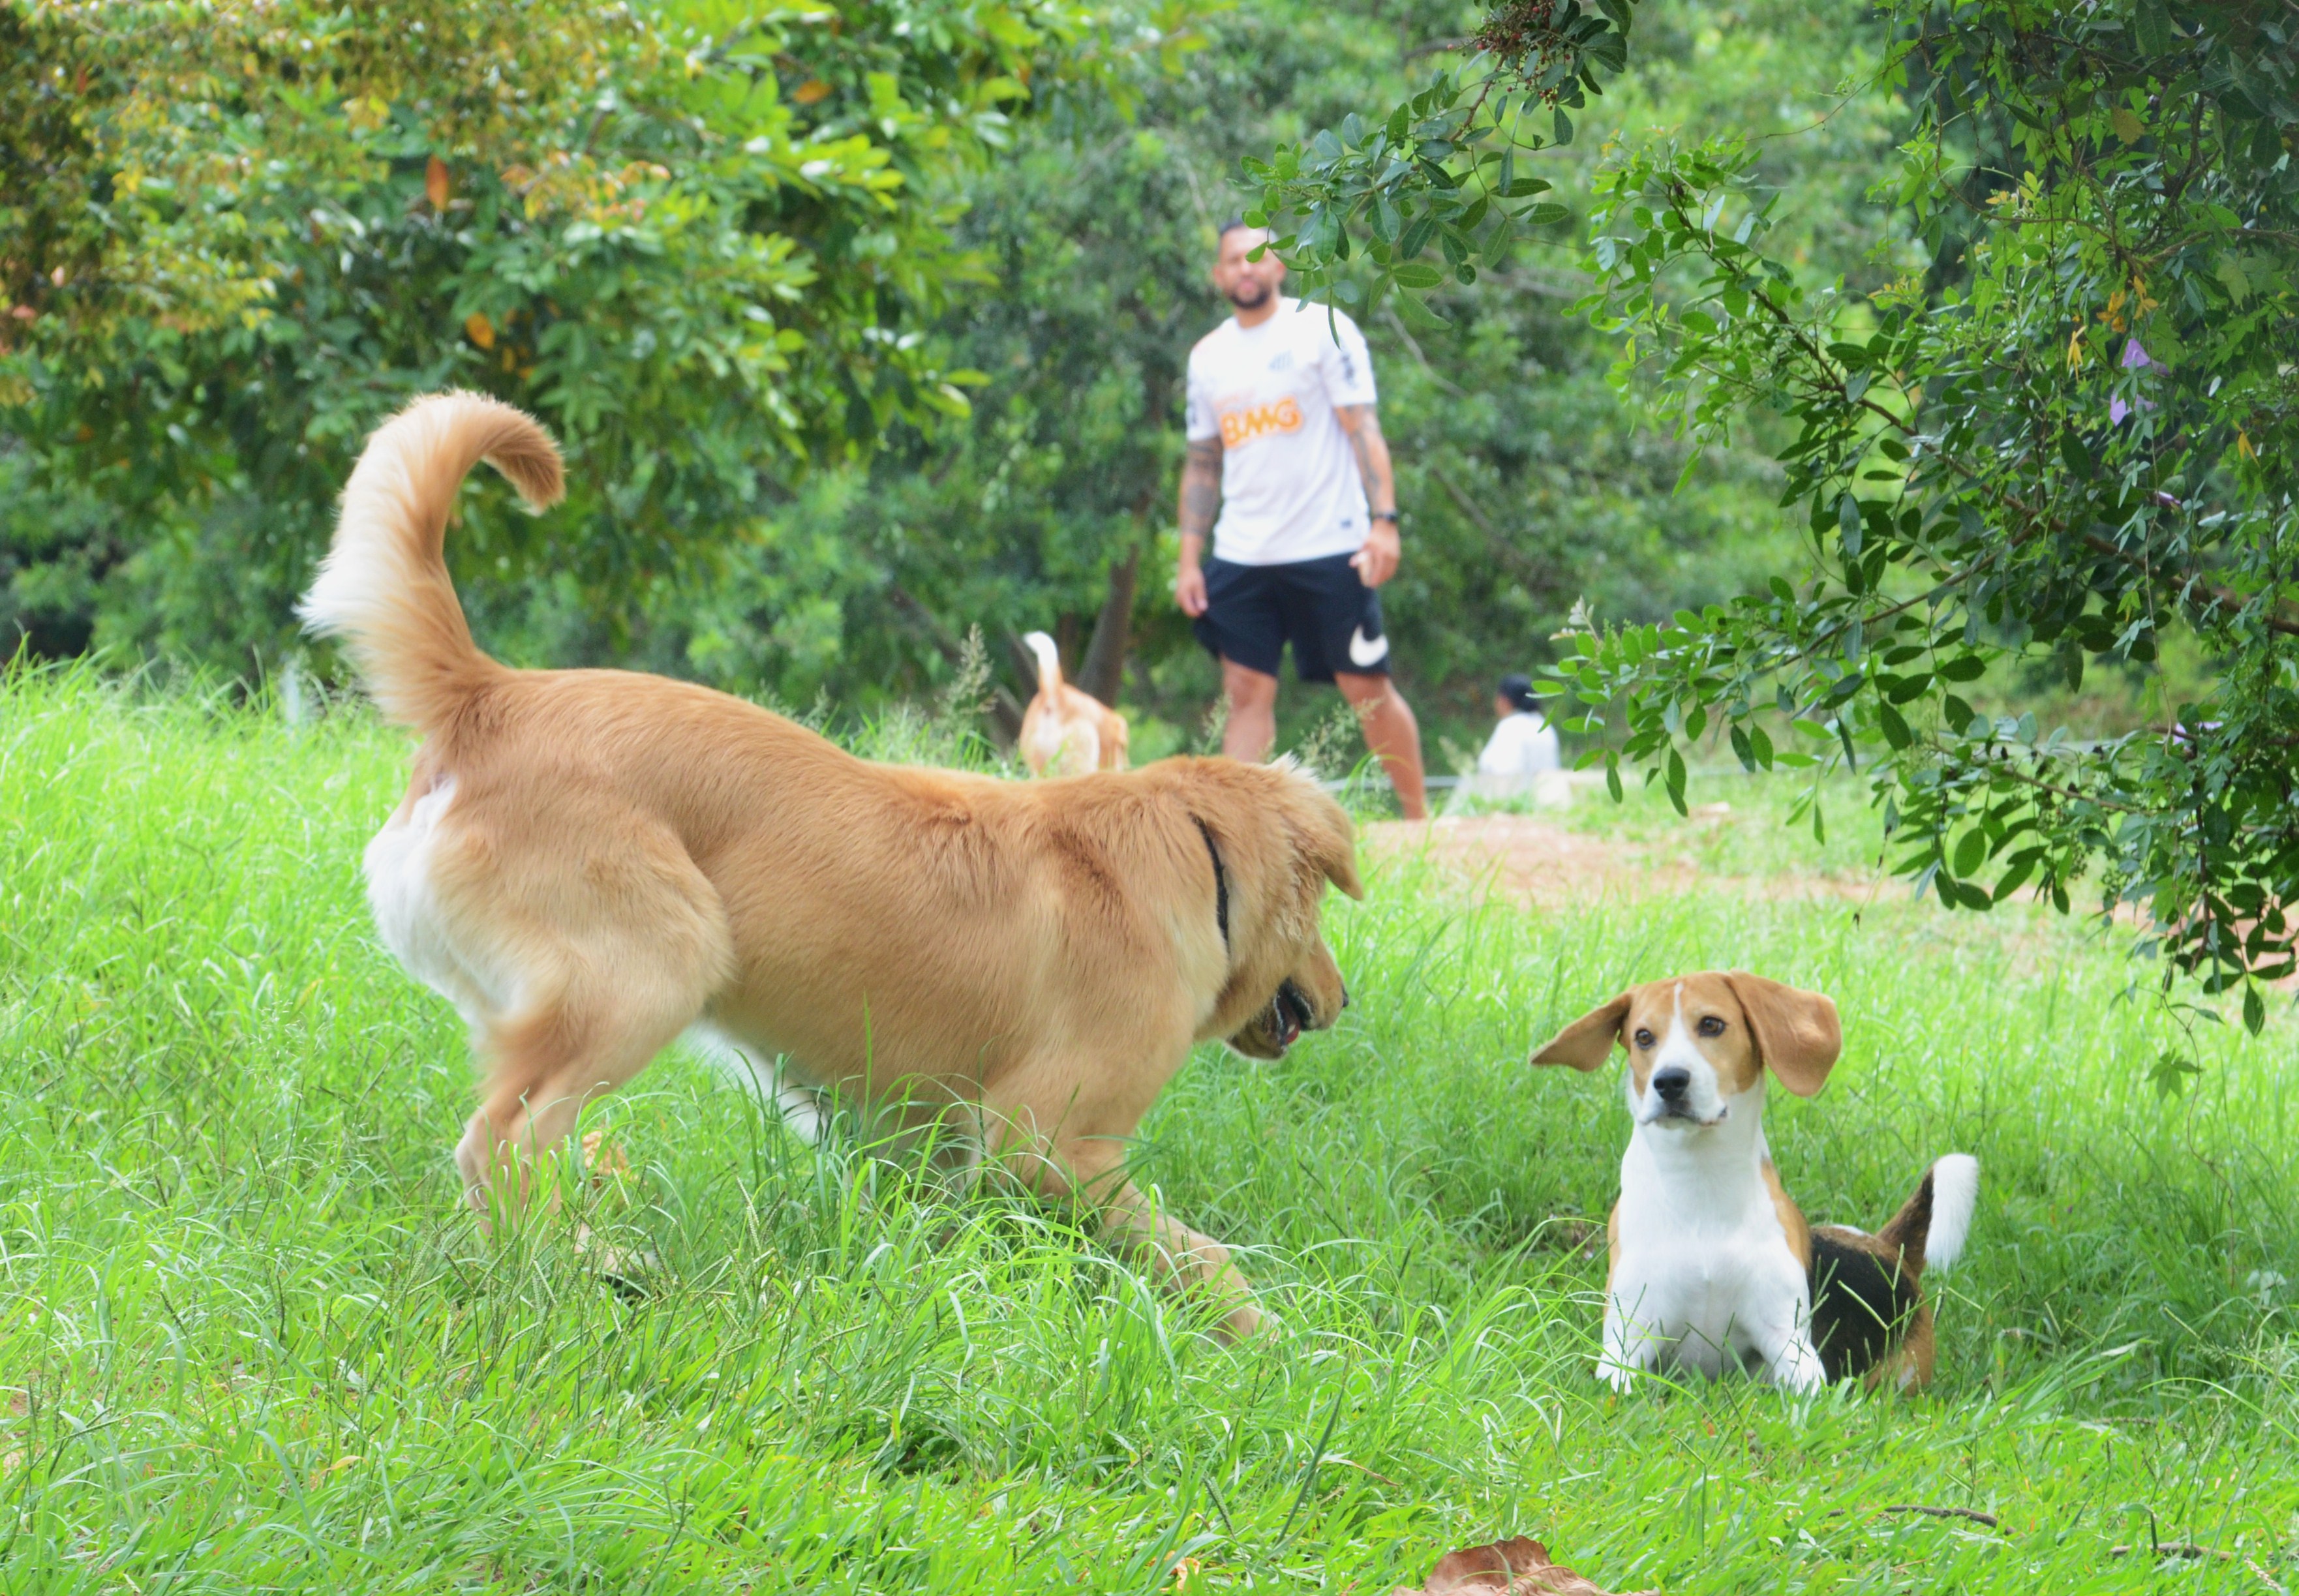 Foto de um jovem observando seu cachorro brincar com outro cachorro em um dos espaços especiais fechados para cães.